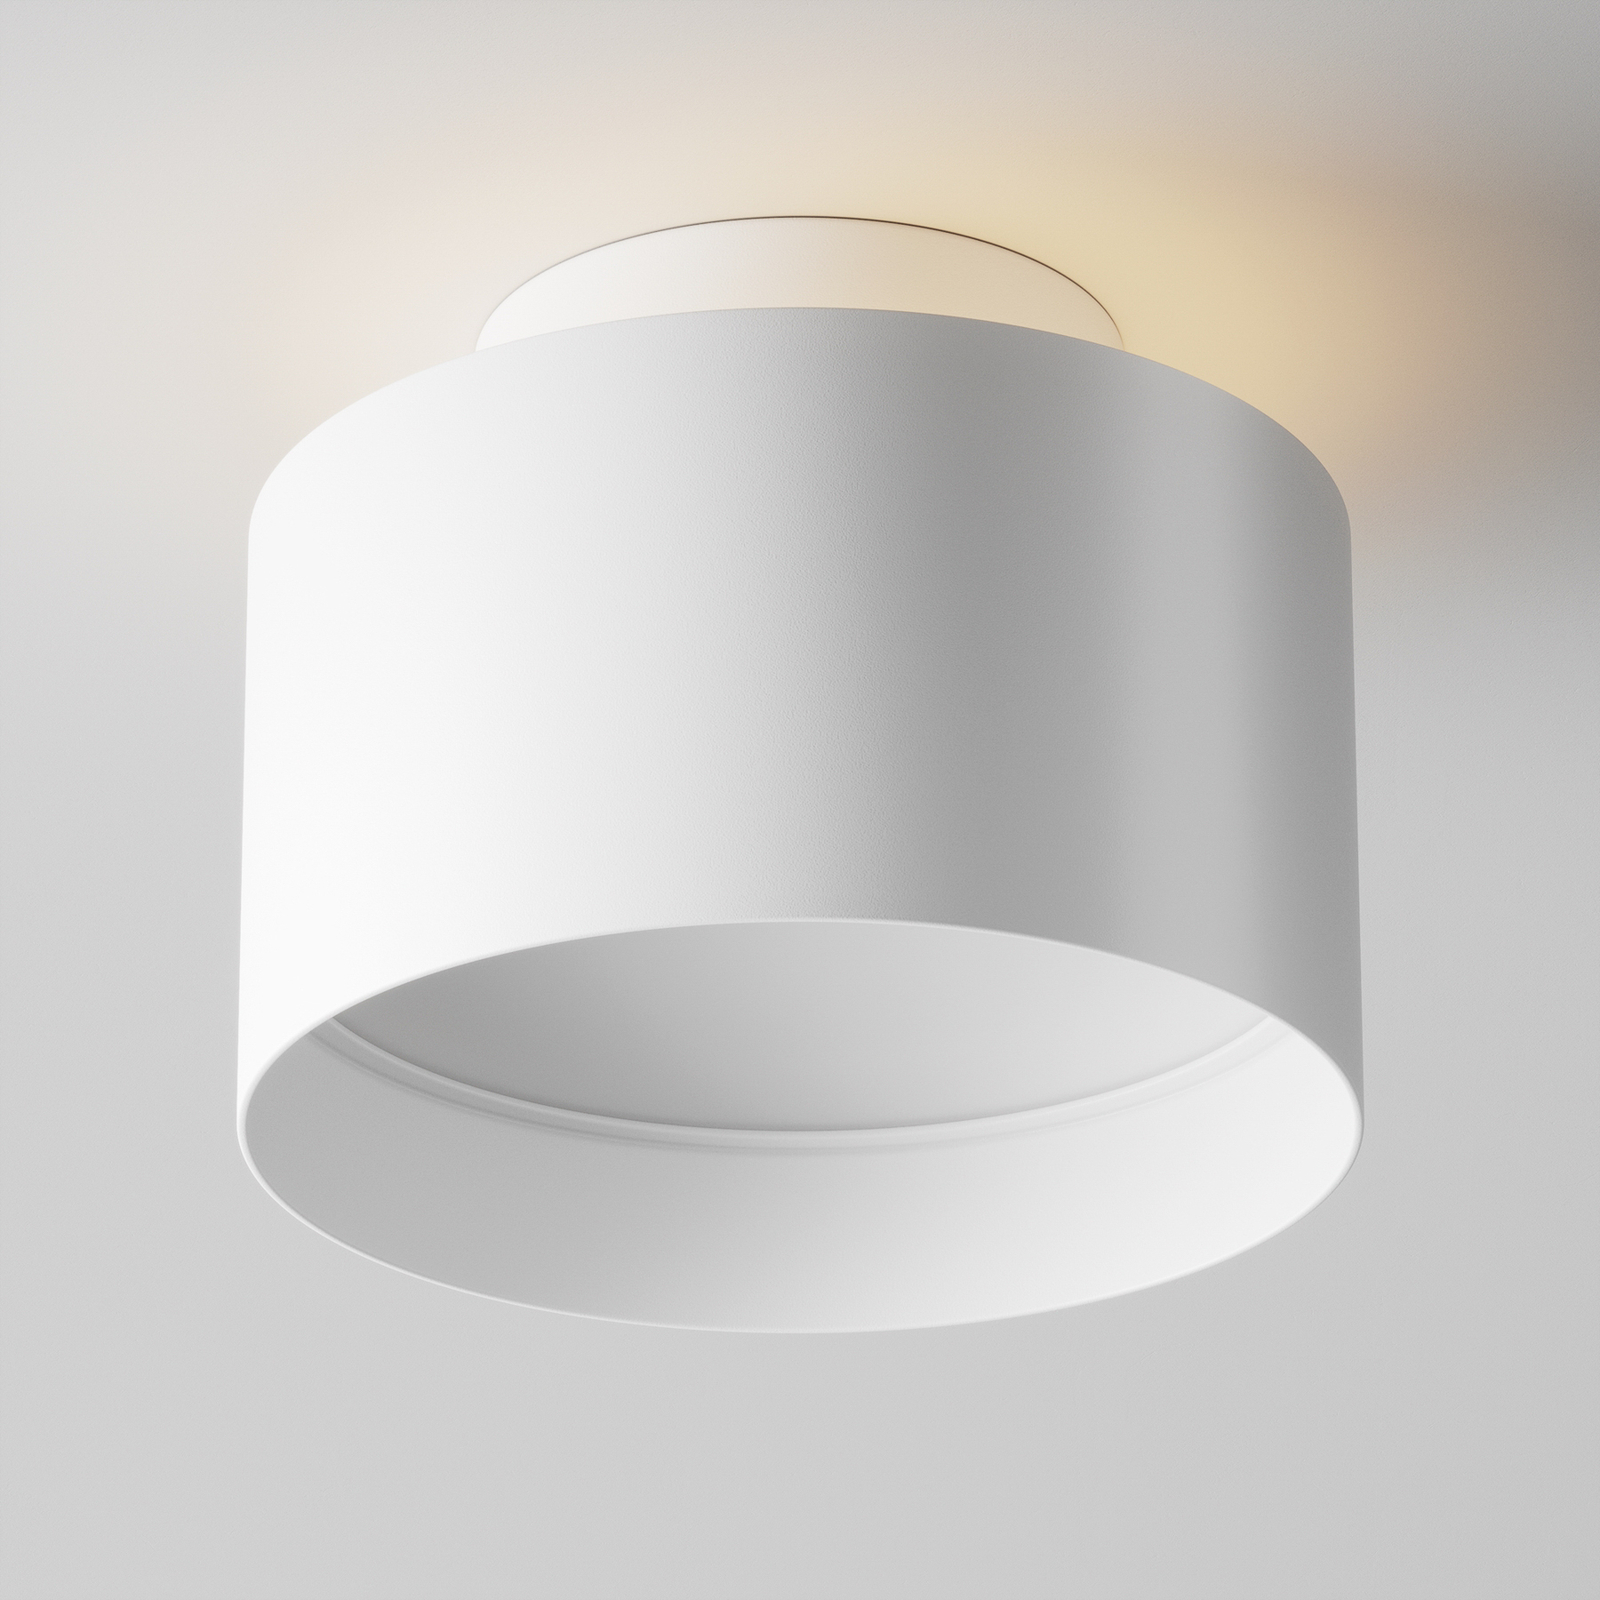 Maytoni Planet plafonnier LED, Ø 12 cm, blanc